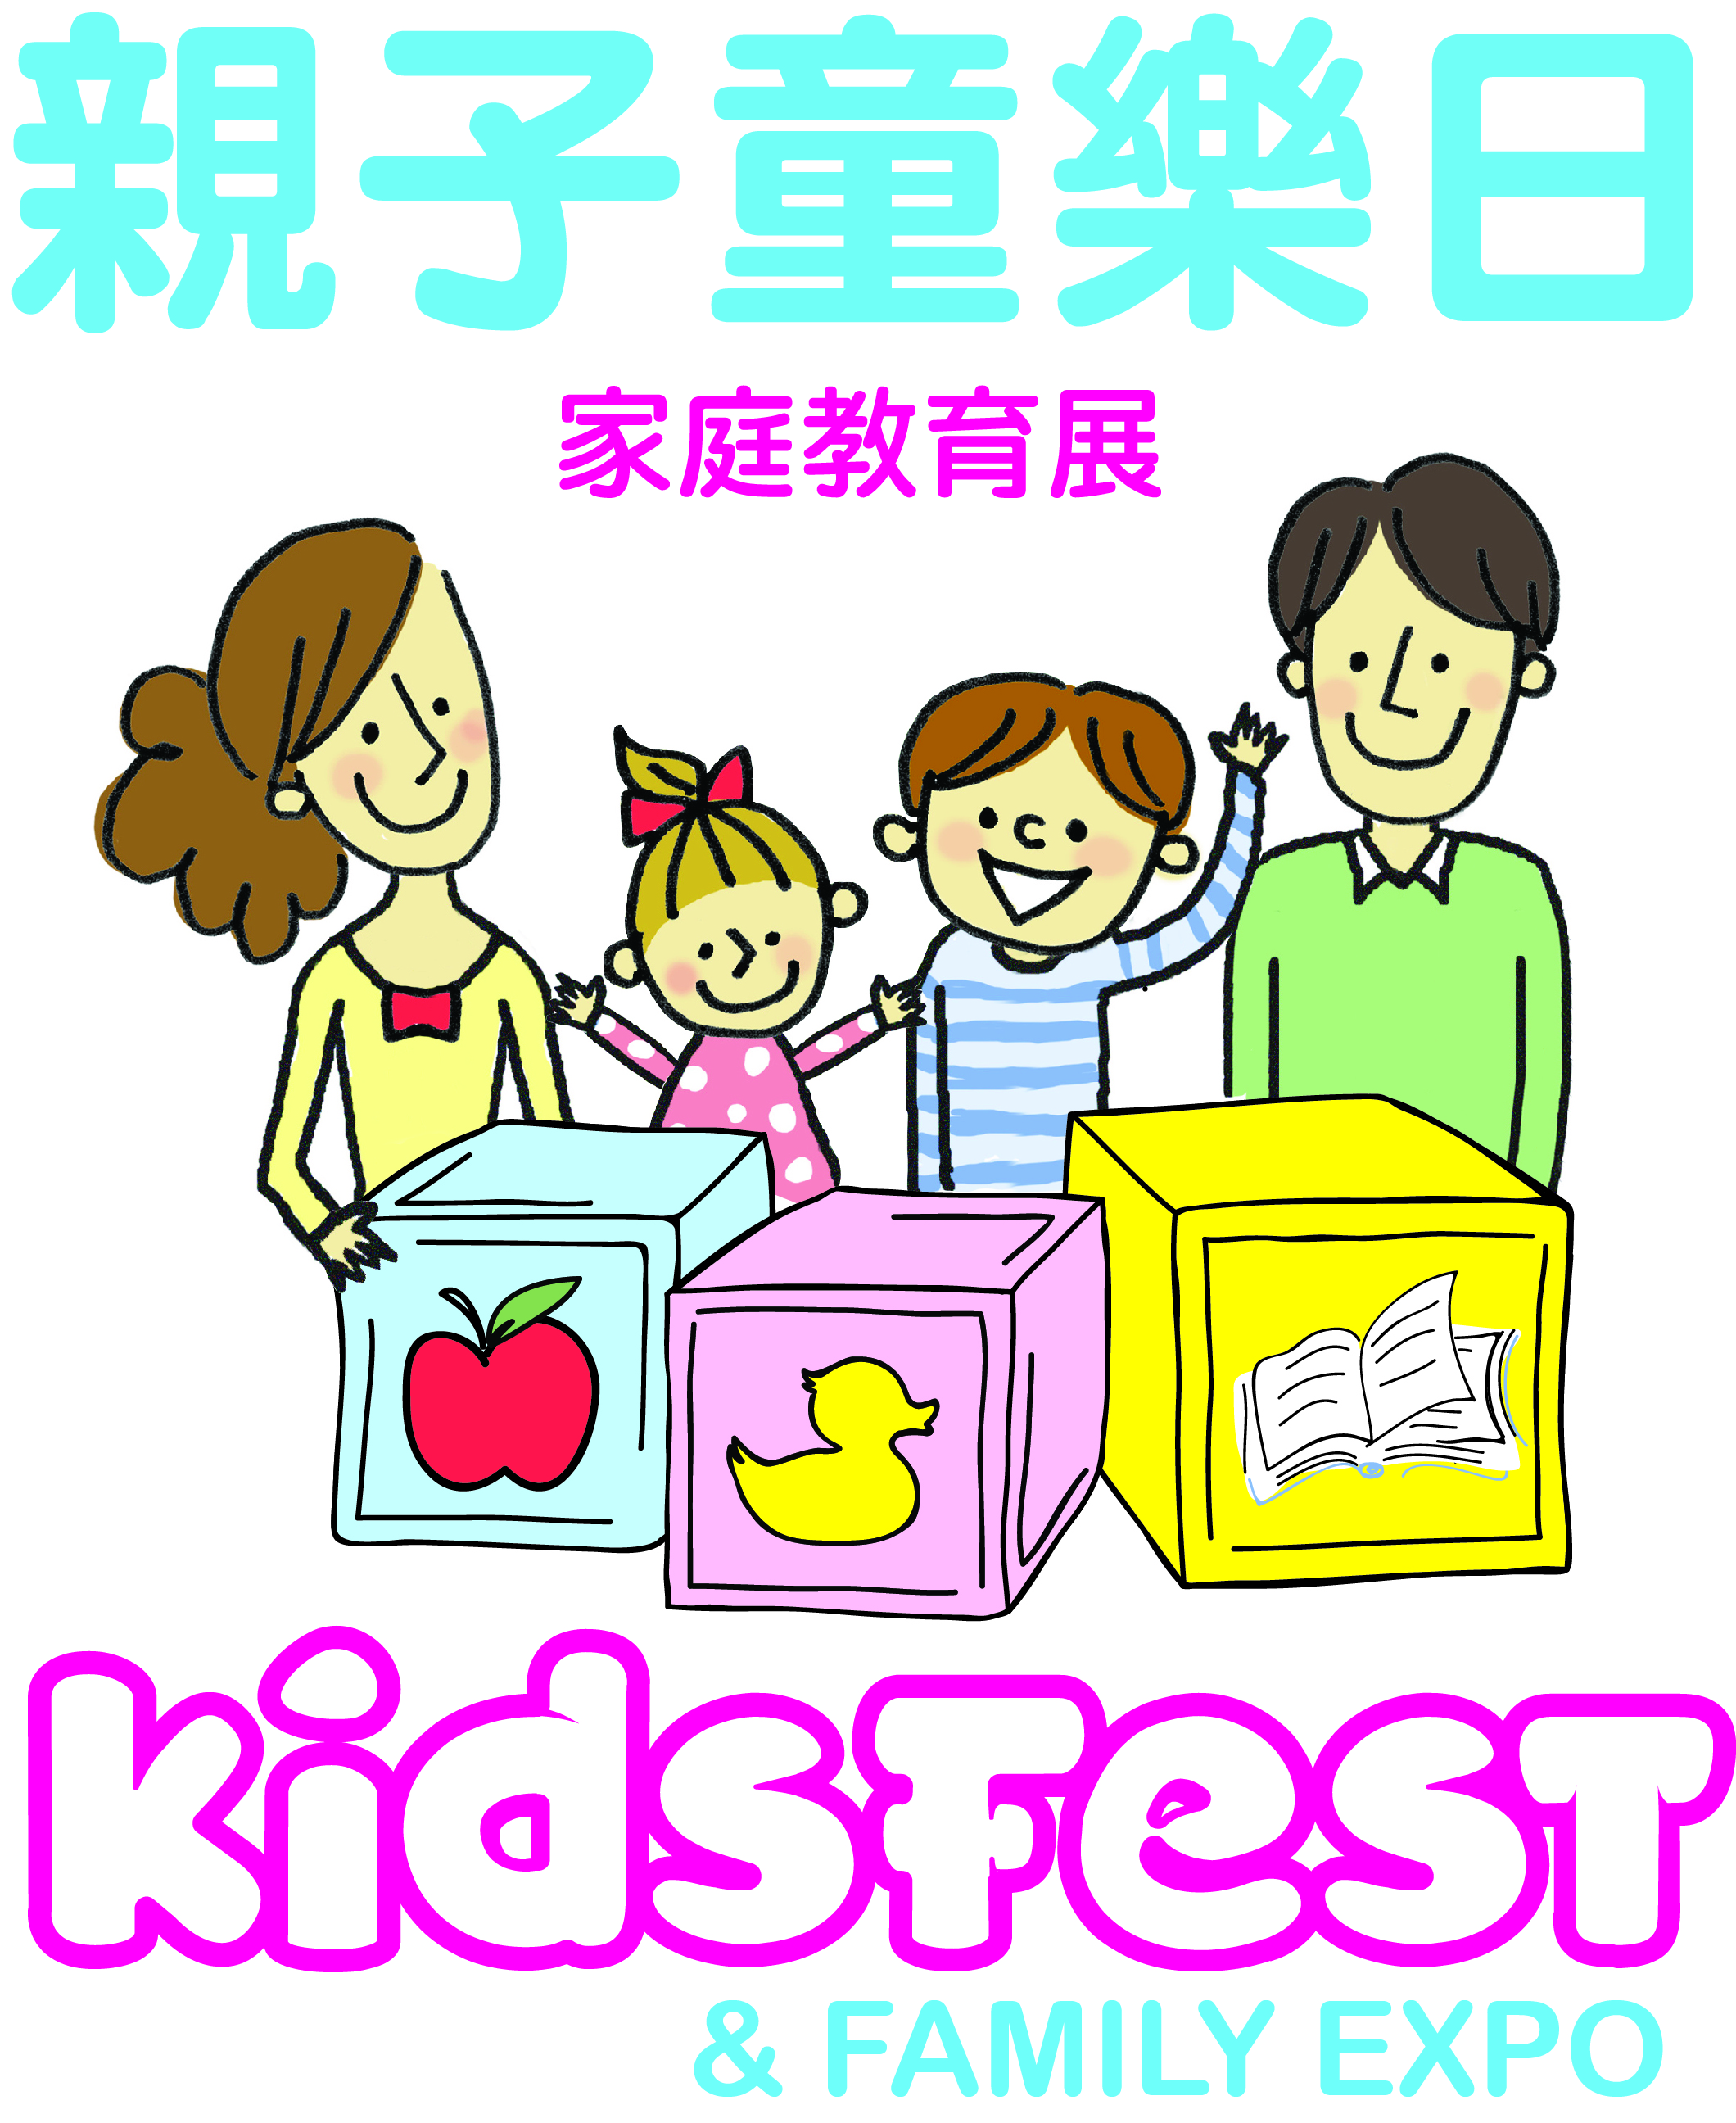 KidsFest Expo